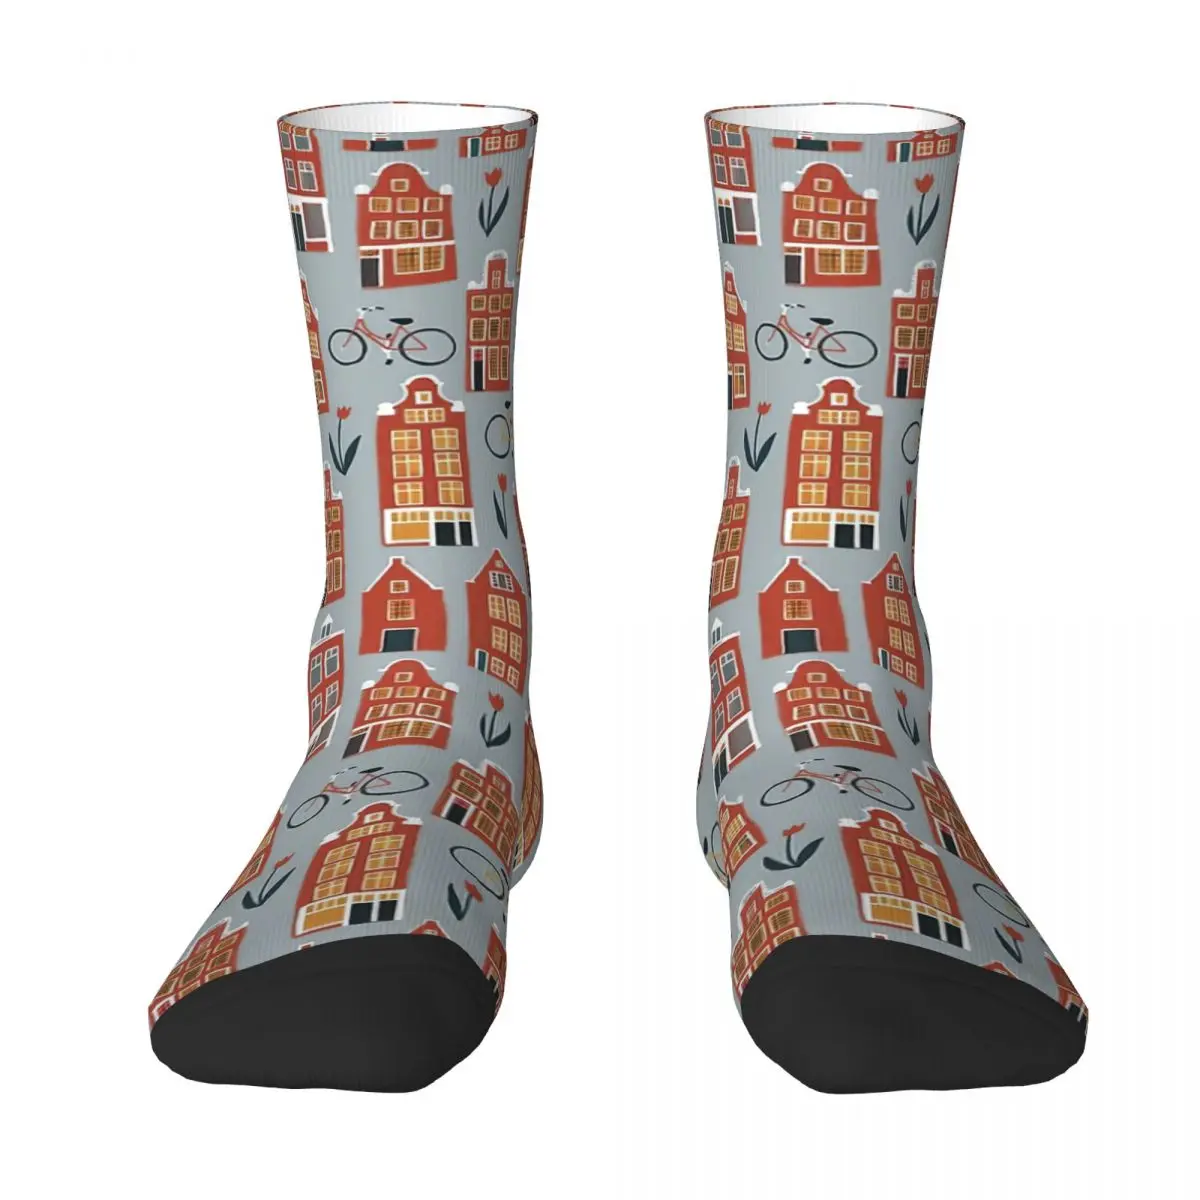 Cute Amsterdam Houses Pattern Adult Socks,Unisex socks,men Socks women Socks